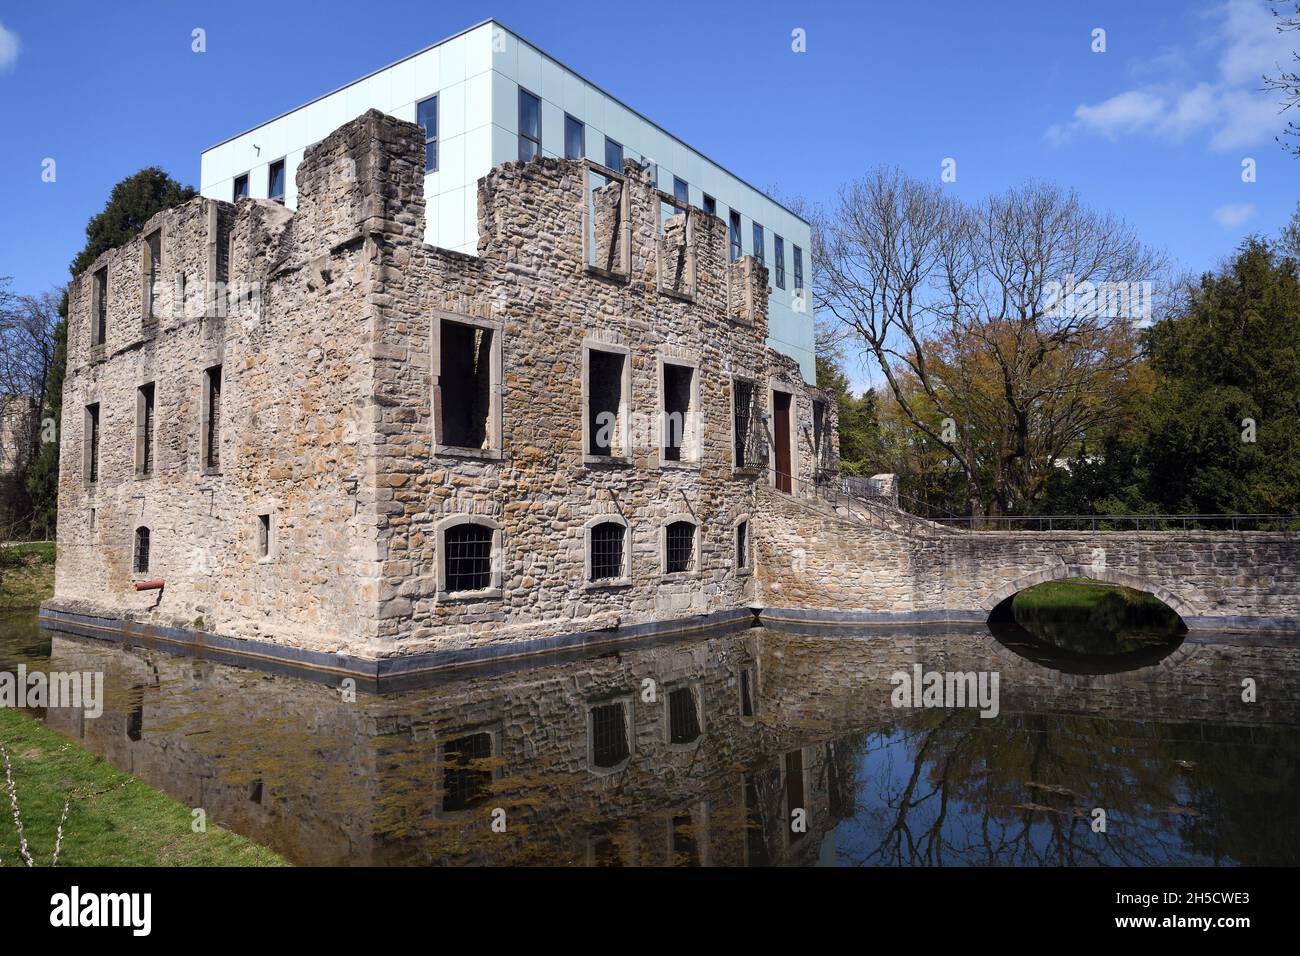 Haus Weitmar, ruines de manoir avec cube, Allemagne, Rhénanie-du-Nord-Westphalie, région de la Ruhr, Bochum Banque D'Images